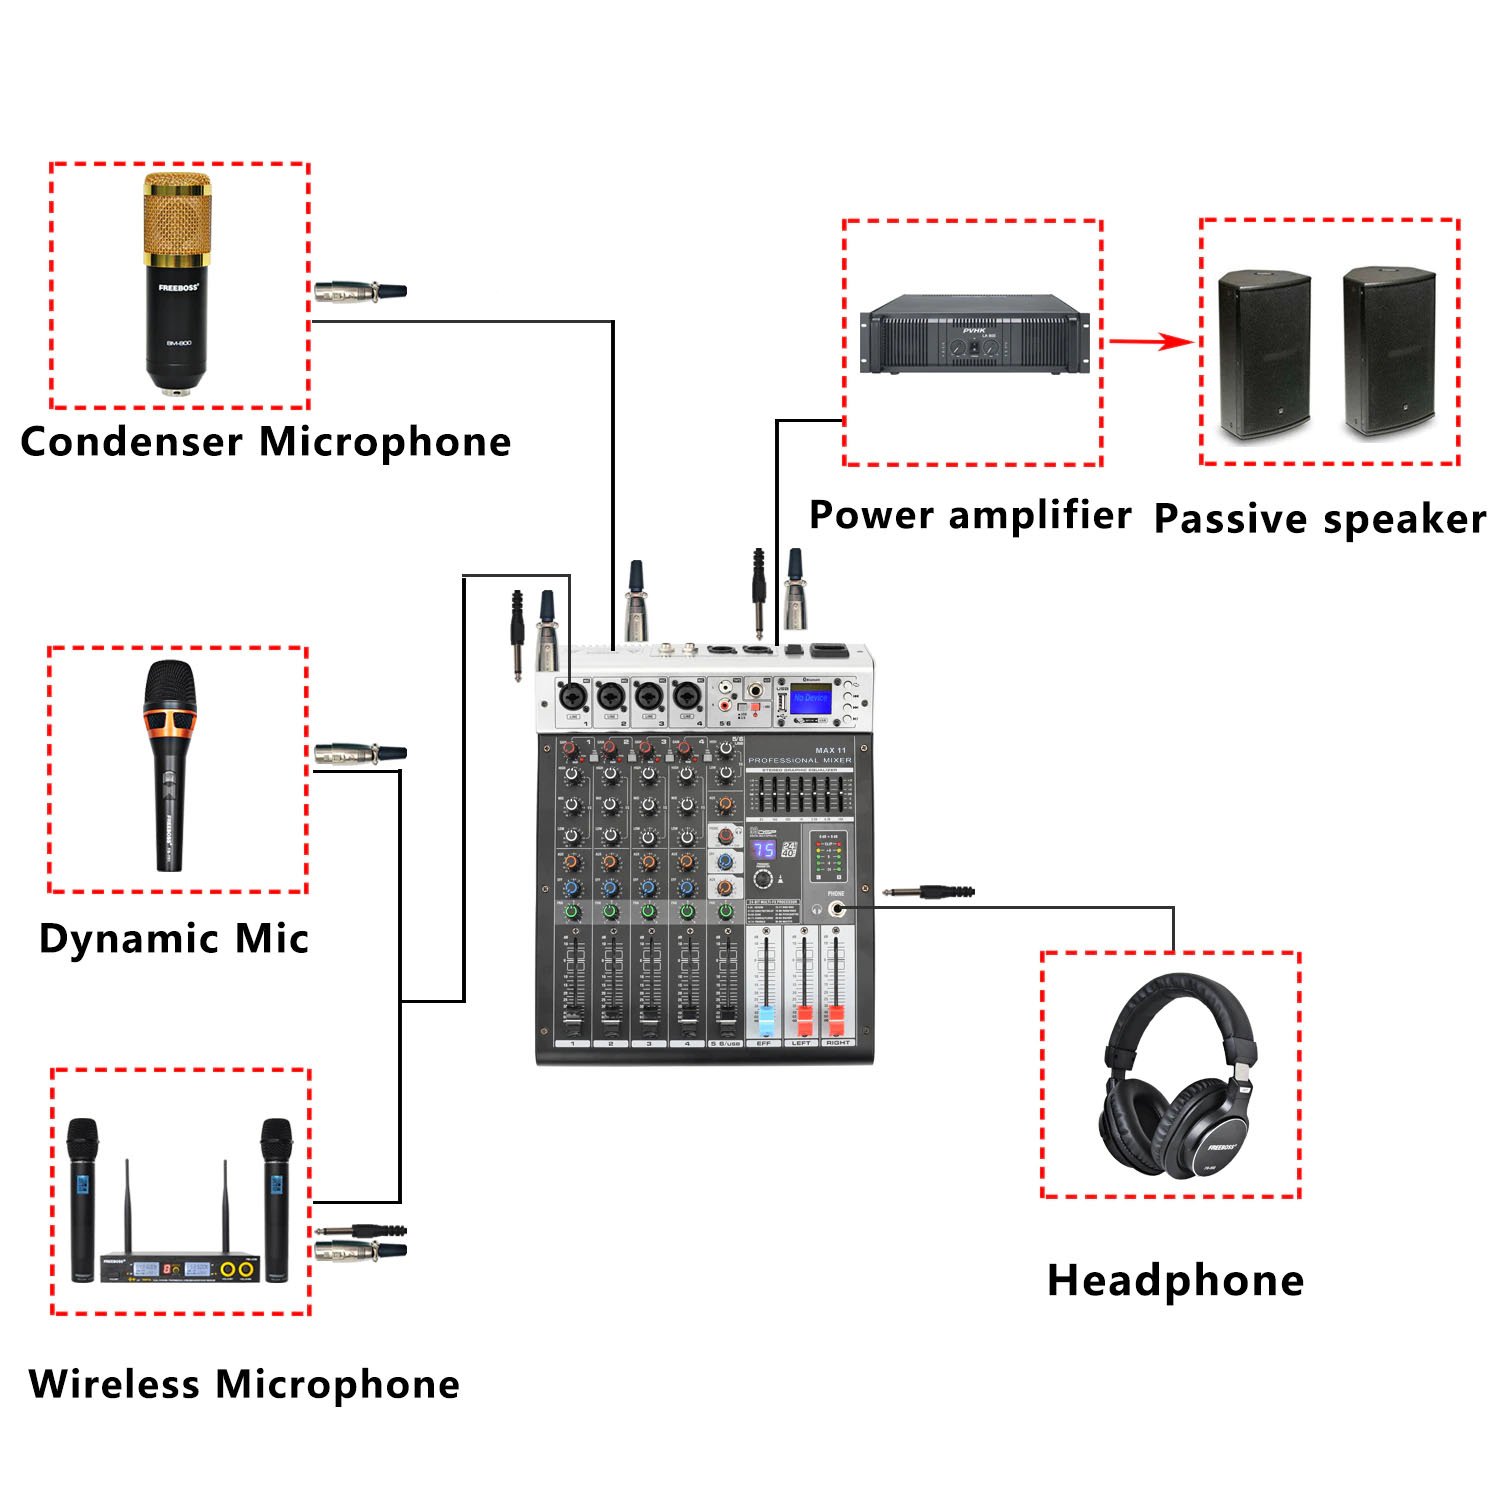 Bàn trộn âm thanh Mixer Max 11 - 6 kênh (4 mono, 2stereo) kết nối Bluetooth, USB - 99 hiệu ứng vang - Tích hợp nguồn 48V cho micro condenser - Mixer số chuyên nghiệp cho sân khấu, hội trường, phòng thu, hát karaoke gia đình, live stream - Hàng nhập khẩu